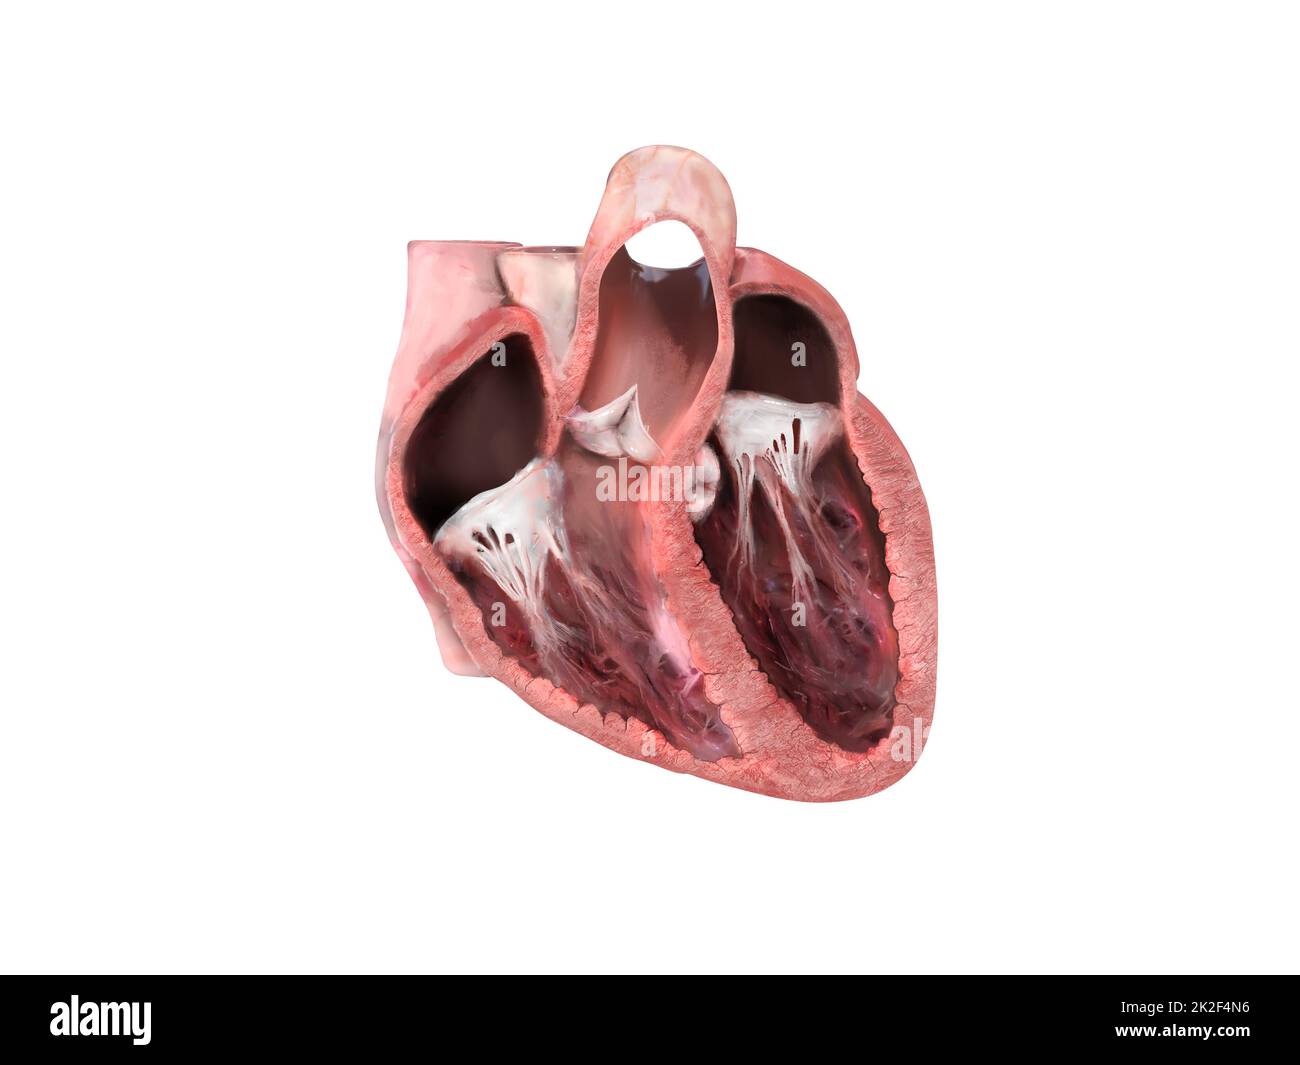 anatomie du cœur humain. Schéma pédagogique montrant le flux sanguin avec les principales parties étiquetées. section anatomique du cœur, ventricule droit et gauche et septum, valve cardiaque, crise cardiaque, problèmes cardiaques, rendu 3d Banque D'Images